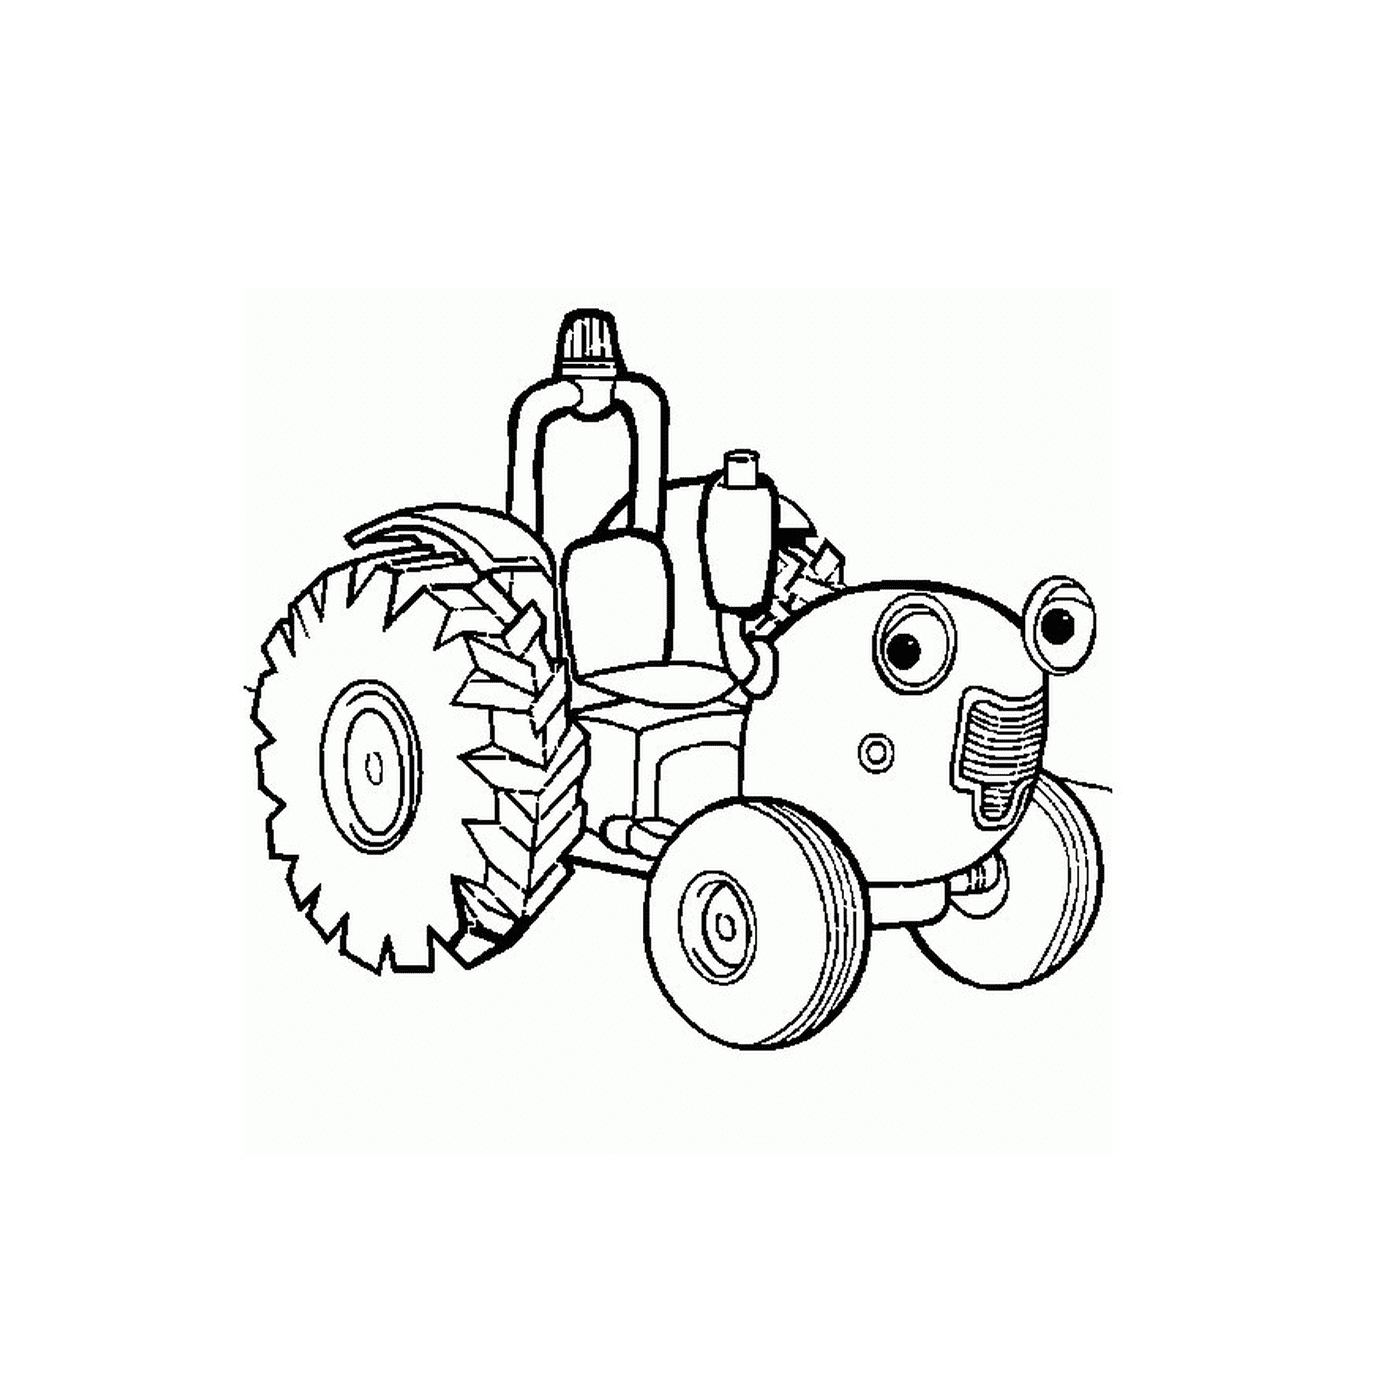 coloriage ferme tracteur